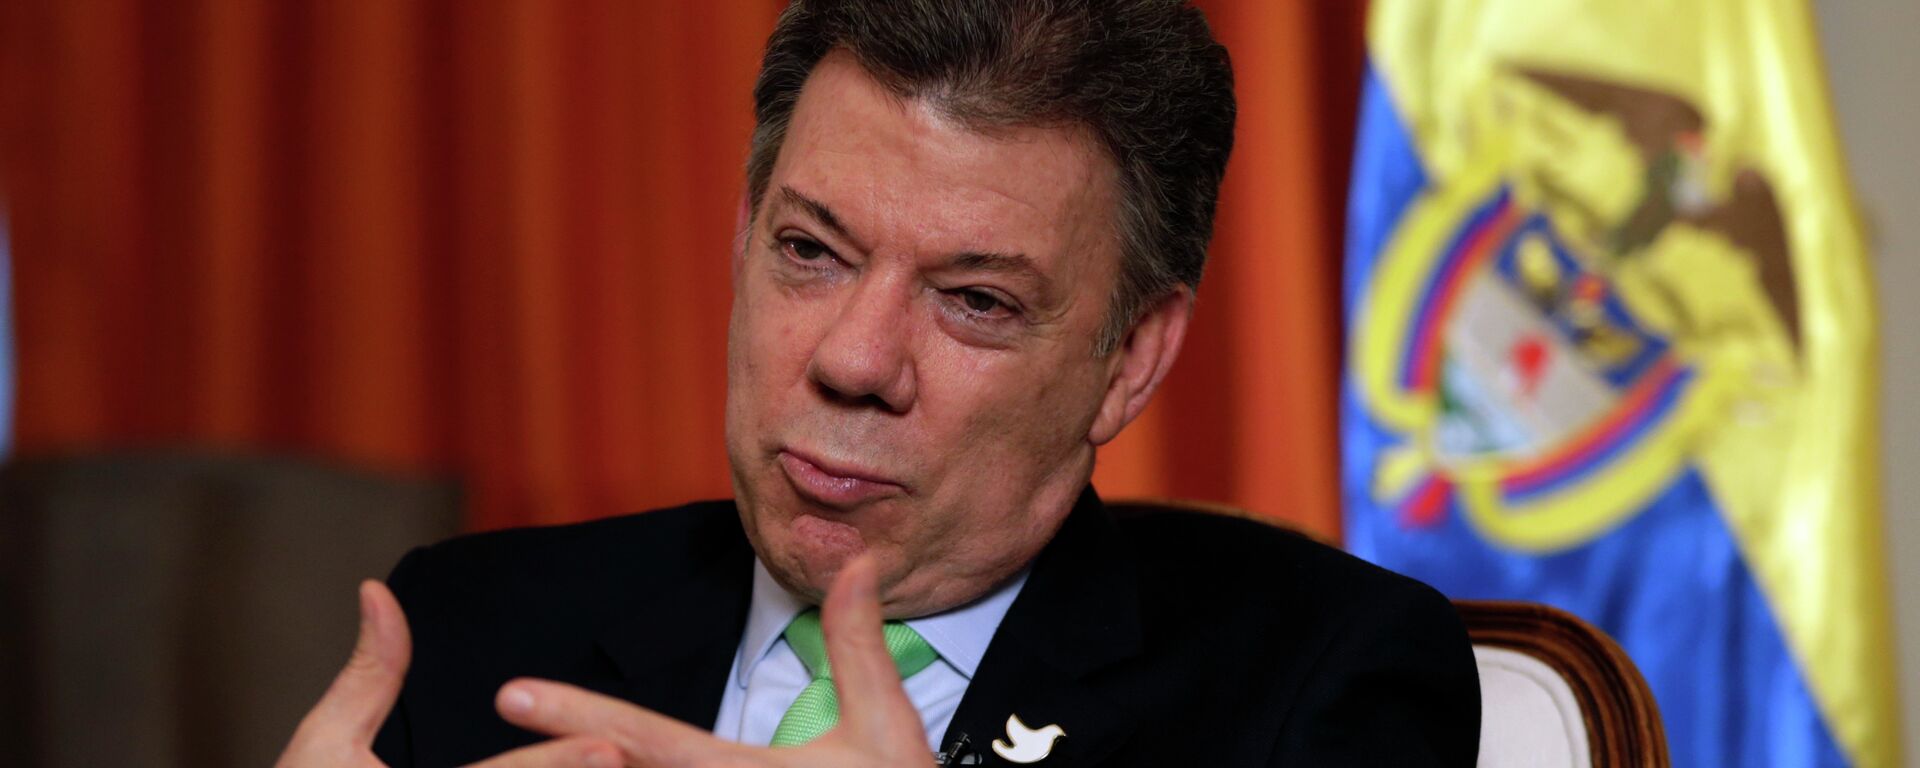 El ex mandatario colombiano Juan Manuel Santos (2010-2018)  - Sputnik Mundo, 1920, 19.05.2021